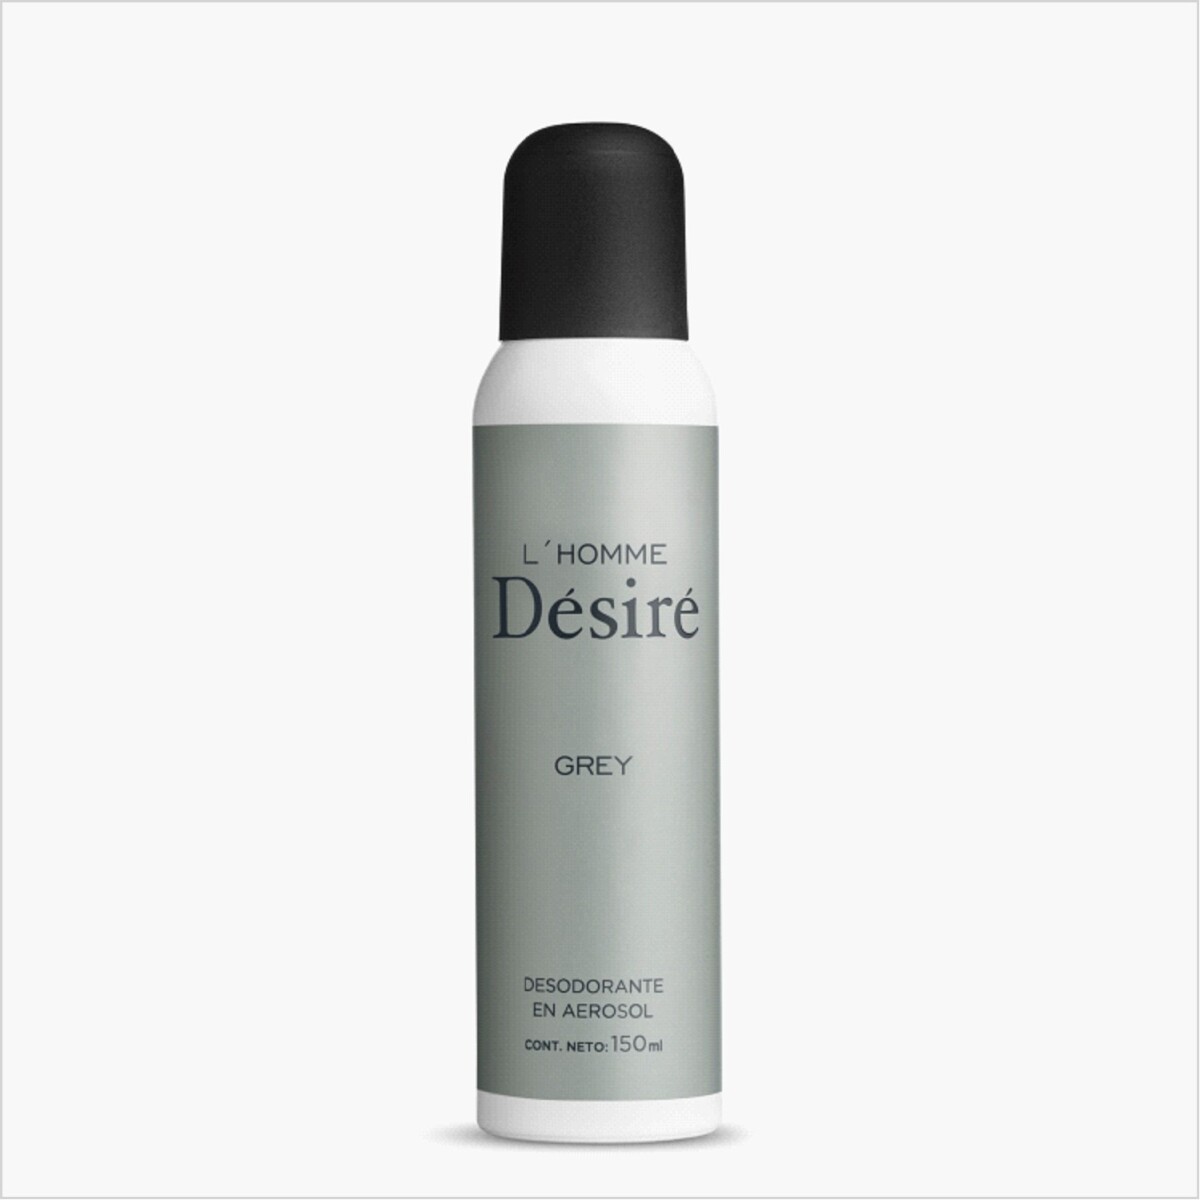 Desire Desodorante Grey 